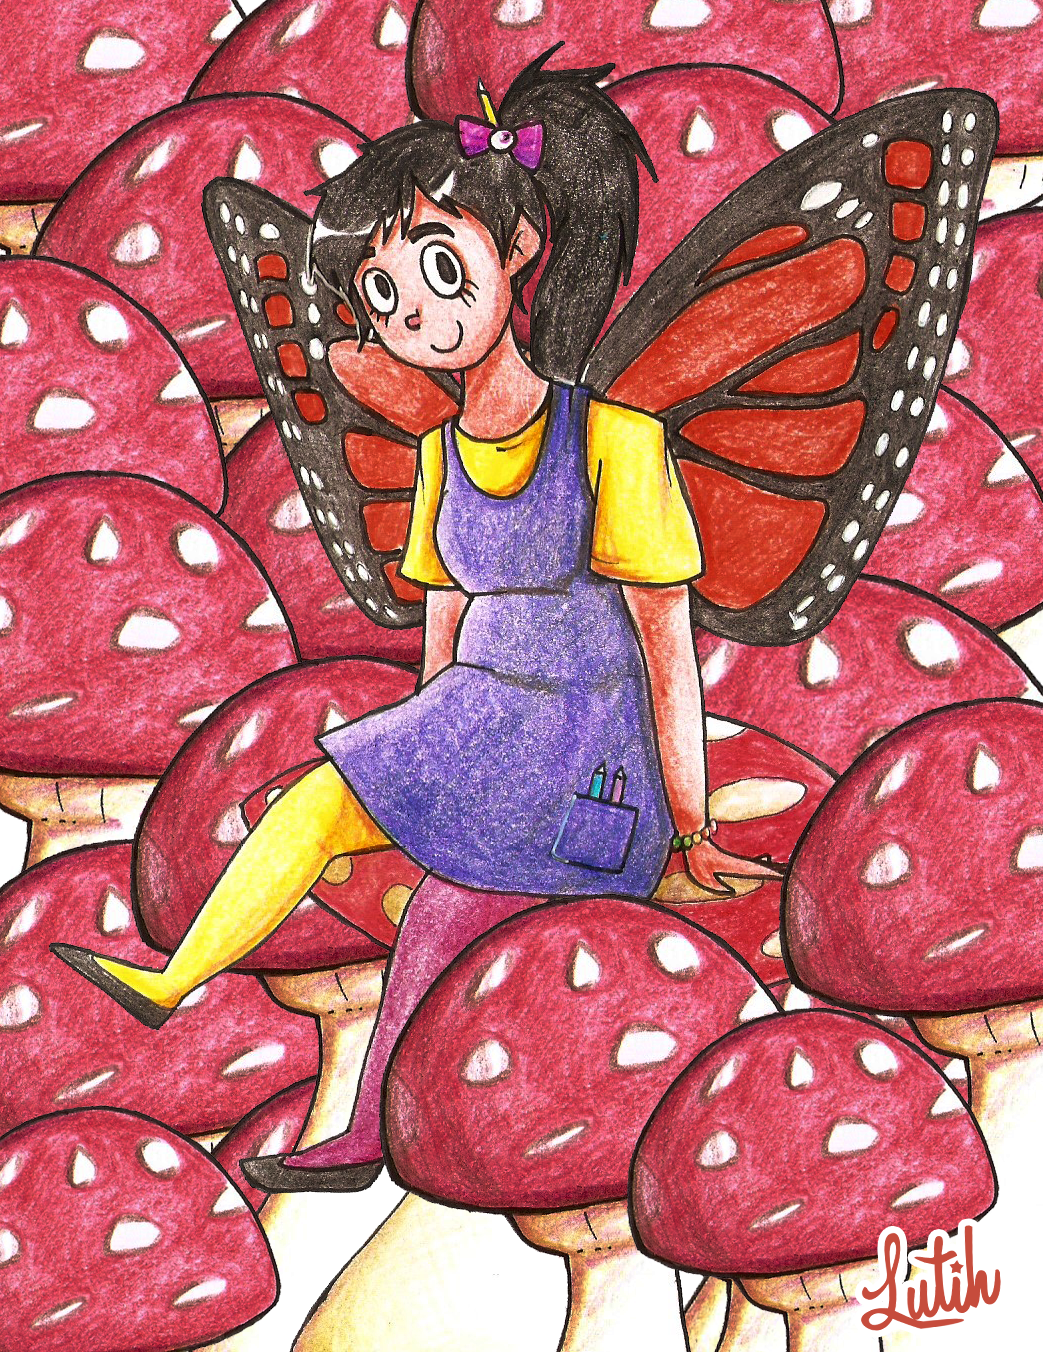 lutih arica chile hongos setas Mushrooms shrooms cup Mug  girl cute butterfly wings fairy Butterfly Wings